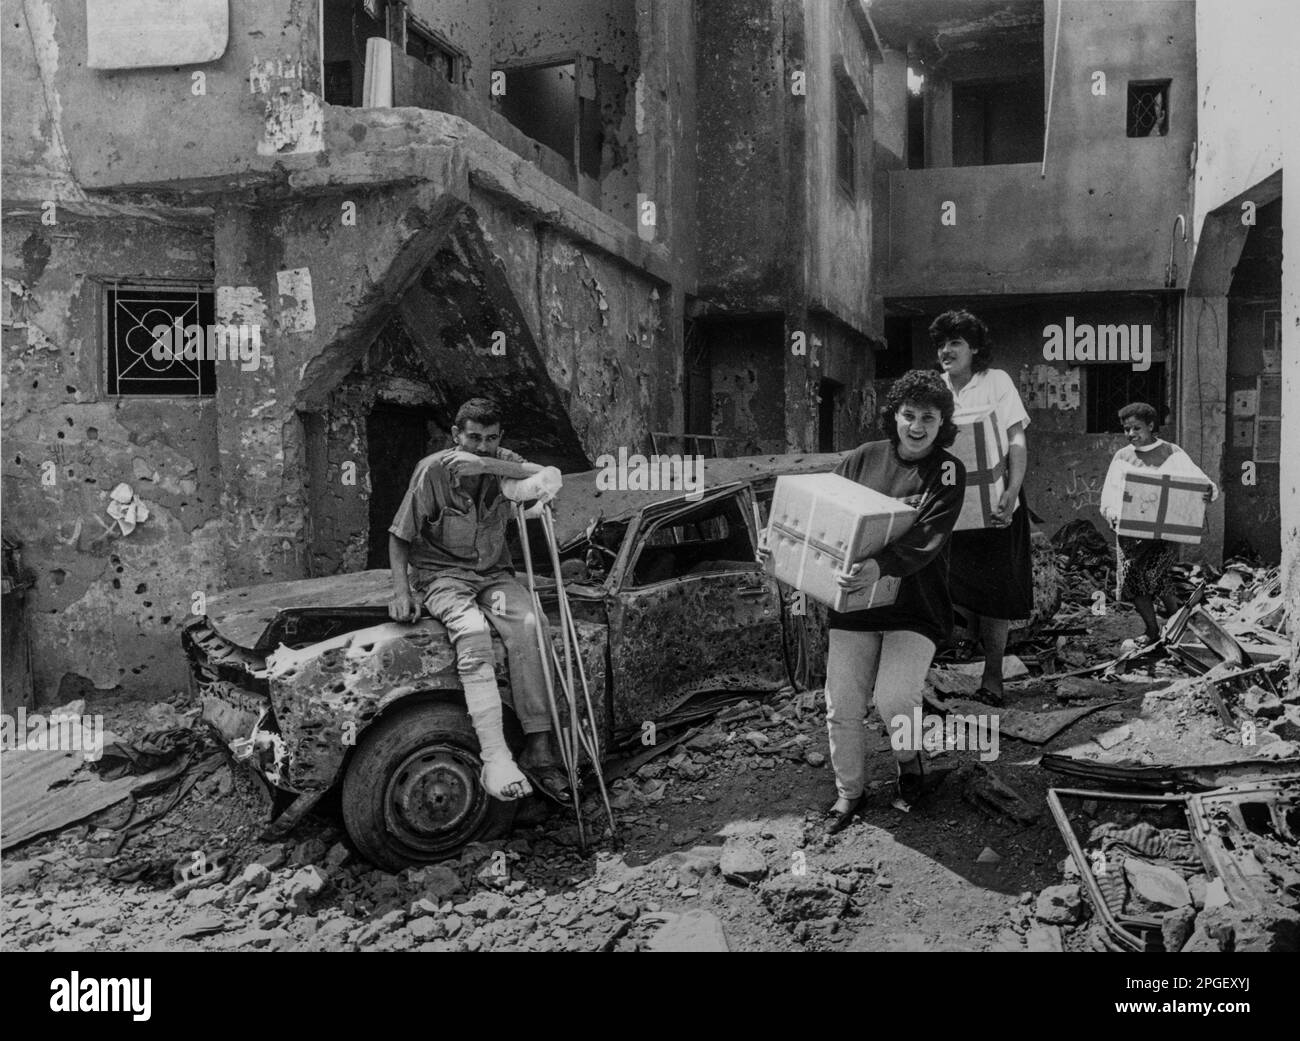 Libanon 1987, i rifugiati palestinesi ritornano nel campo di Butj el-Barajneh con rifornimenti di emergenza alimentare dall'UNRWA (Agenzia ONU per il soccorso e l'occupazione) Foto Stock